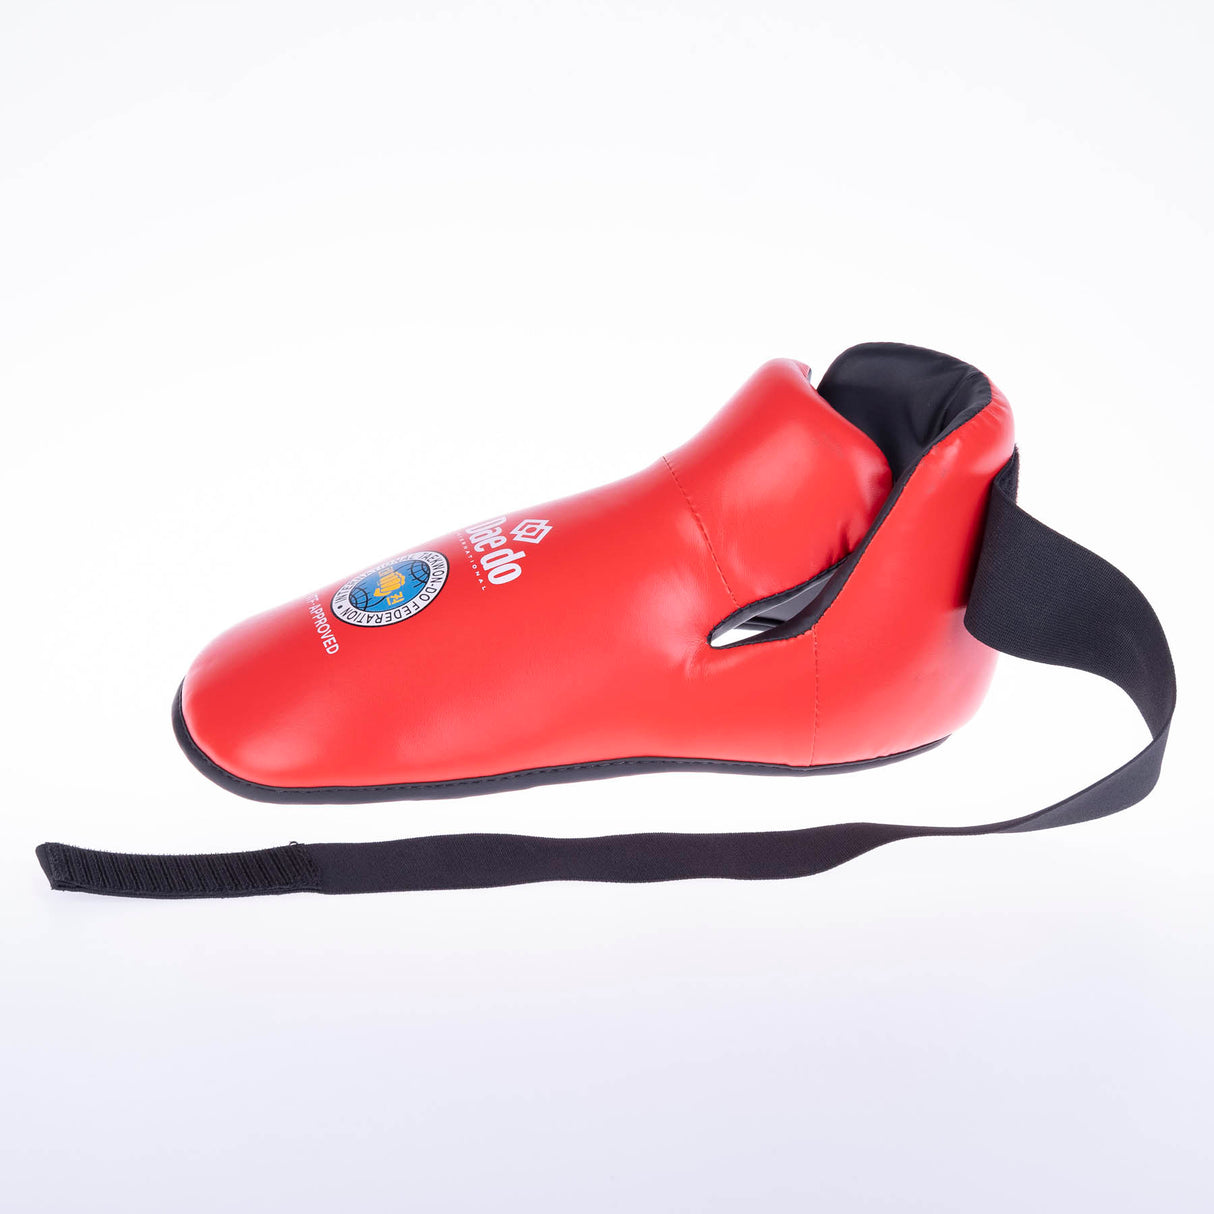 Schuhe Daedo ITF - rot, PRITF2022